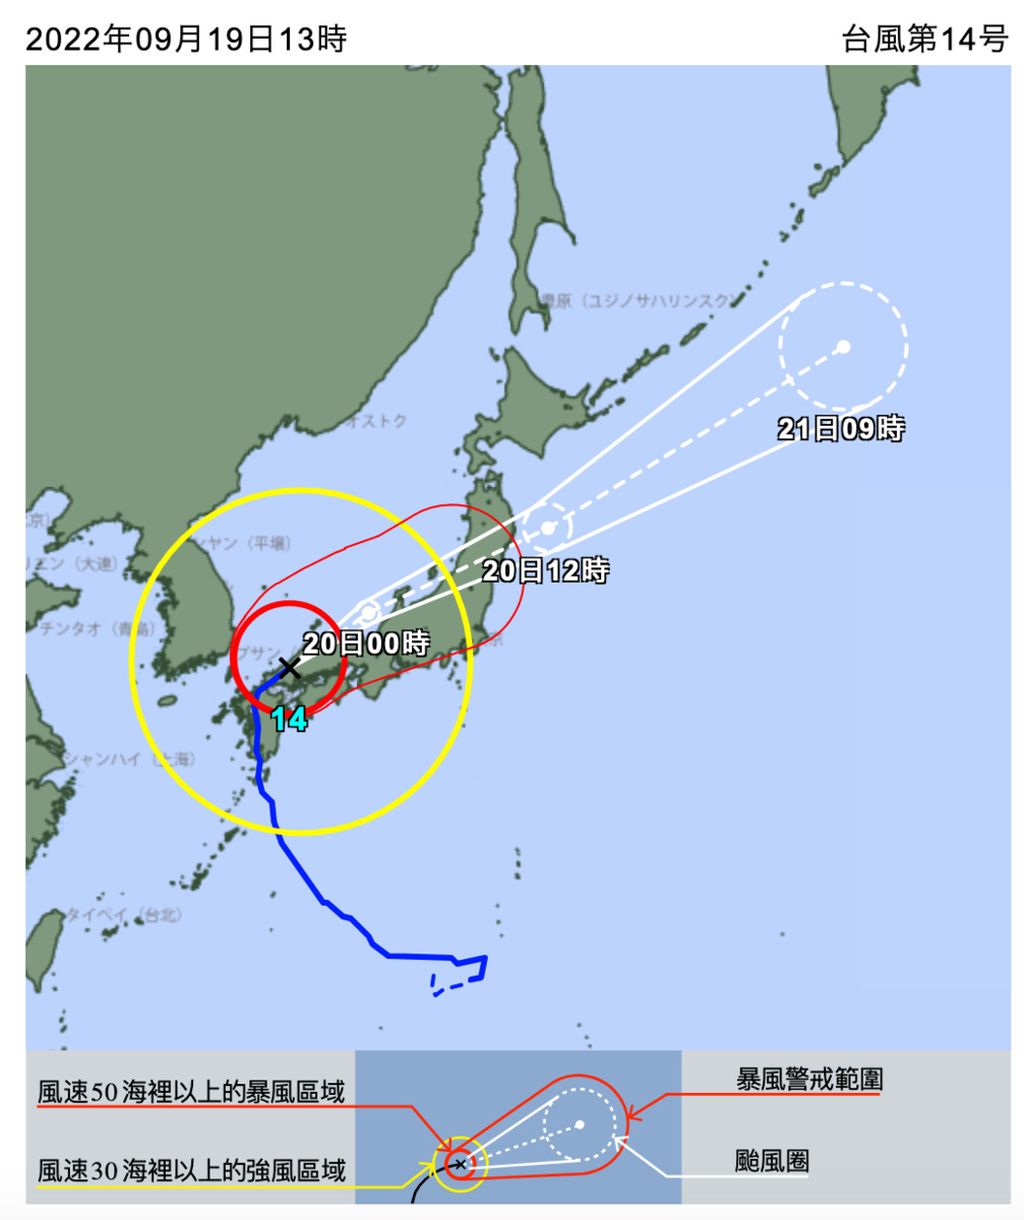 Perkiraan pergerakan siklon Nanmadol, siklon terkuat pada 2022 ini yang melanda Jepang. Topan super Nanmadol telah mendarat di Kyushu selatan, Prefektur Kagoshima, Jepang bagian barat daya, pada Minggu (18/9) dan terus bergerak ke utara. Sumber: Japan Meteorological Agency (2022)